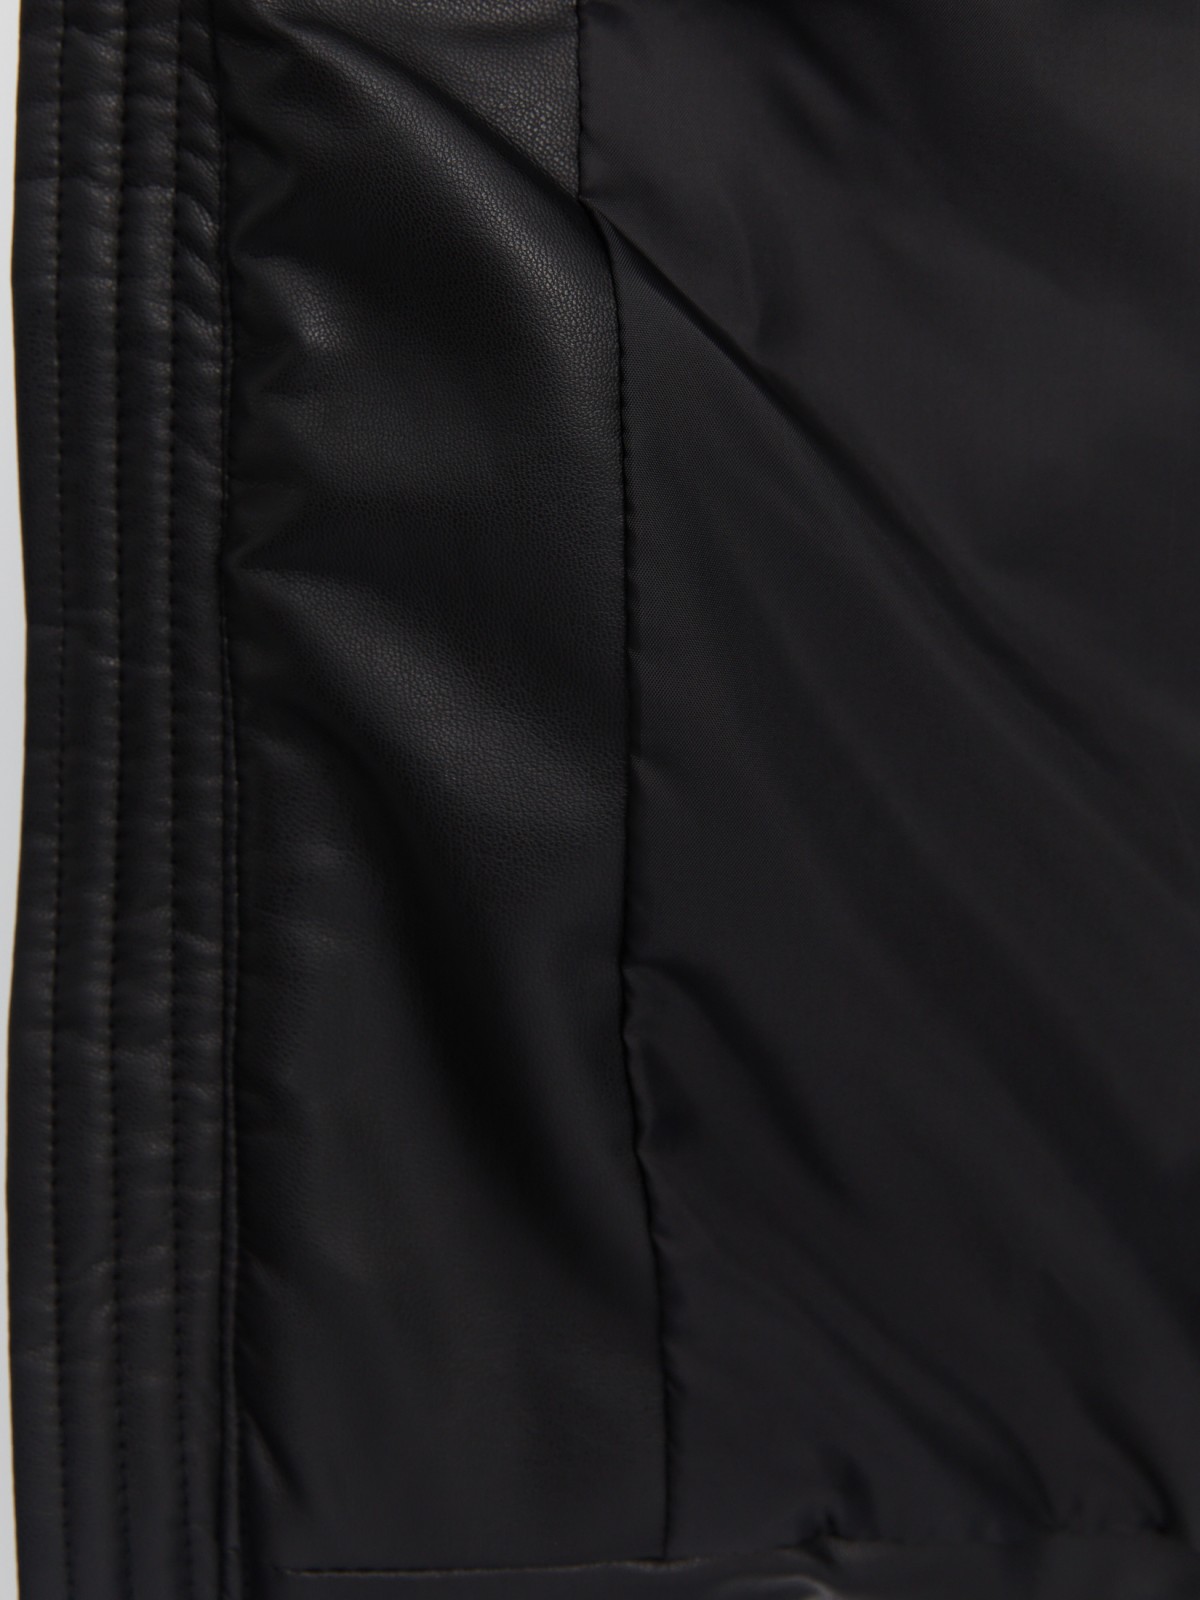 Тёплая стёганая куртка из экокожи на синтепоне с воротником-стойкой zolla 013345150014, цвет черный, размер S - фото 5